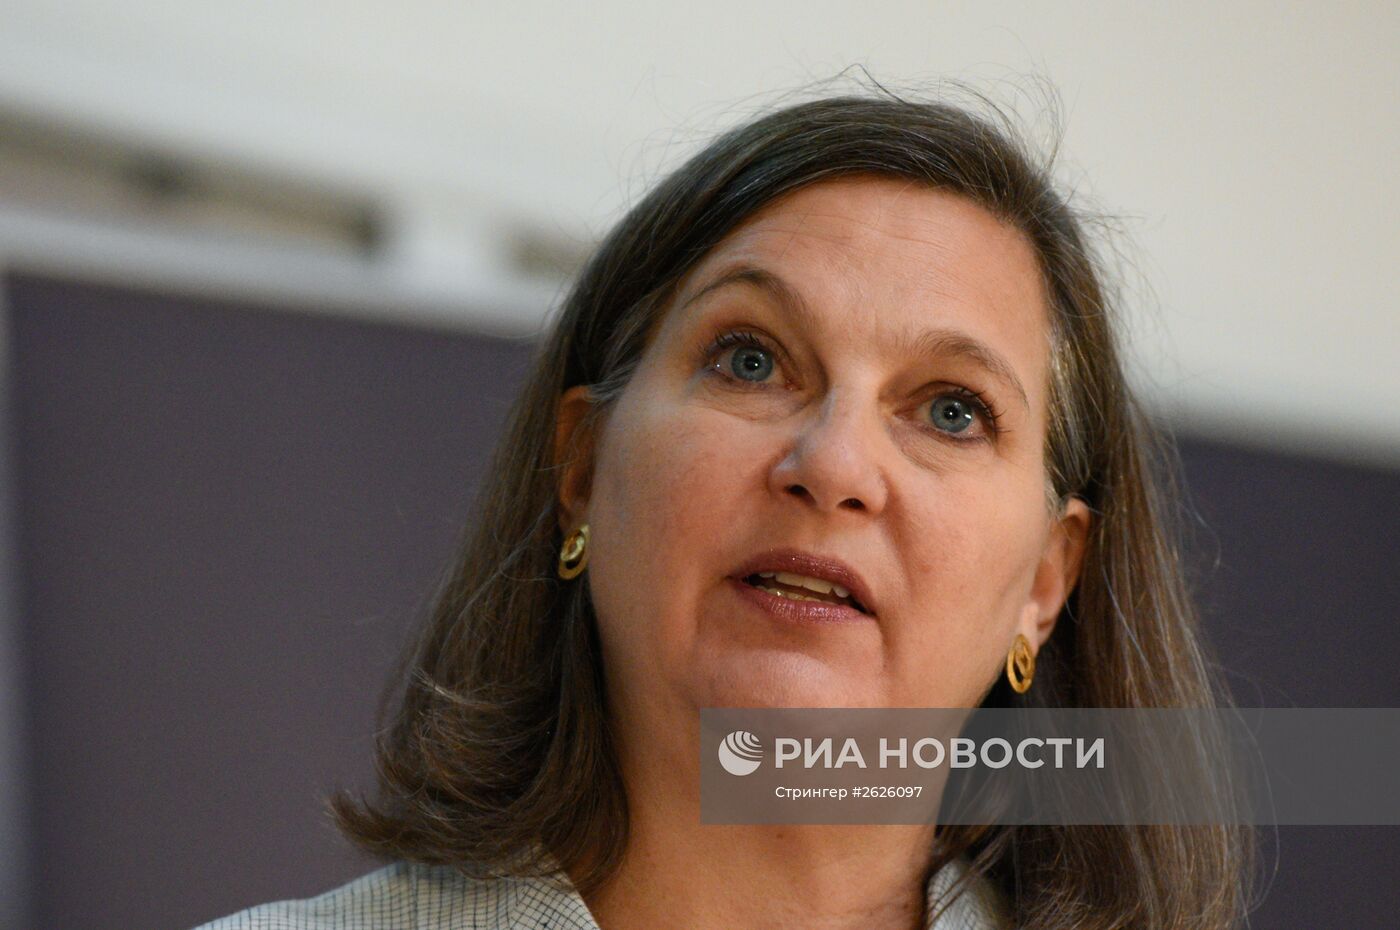 Помощник госсекретаря США Виктория Нуланд в Киеве